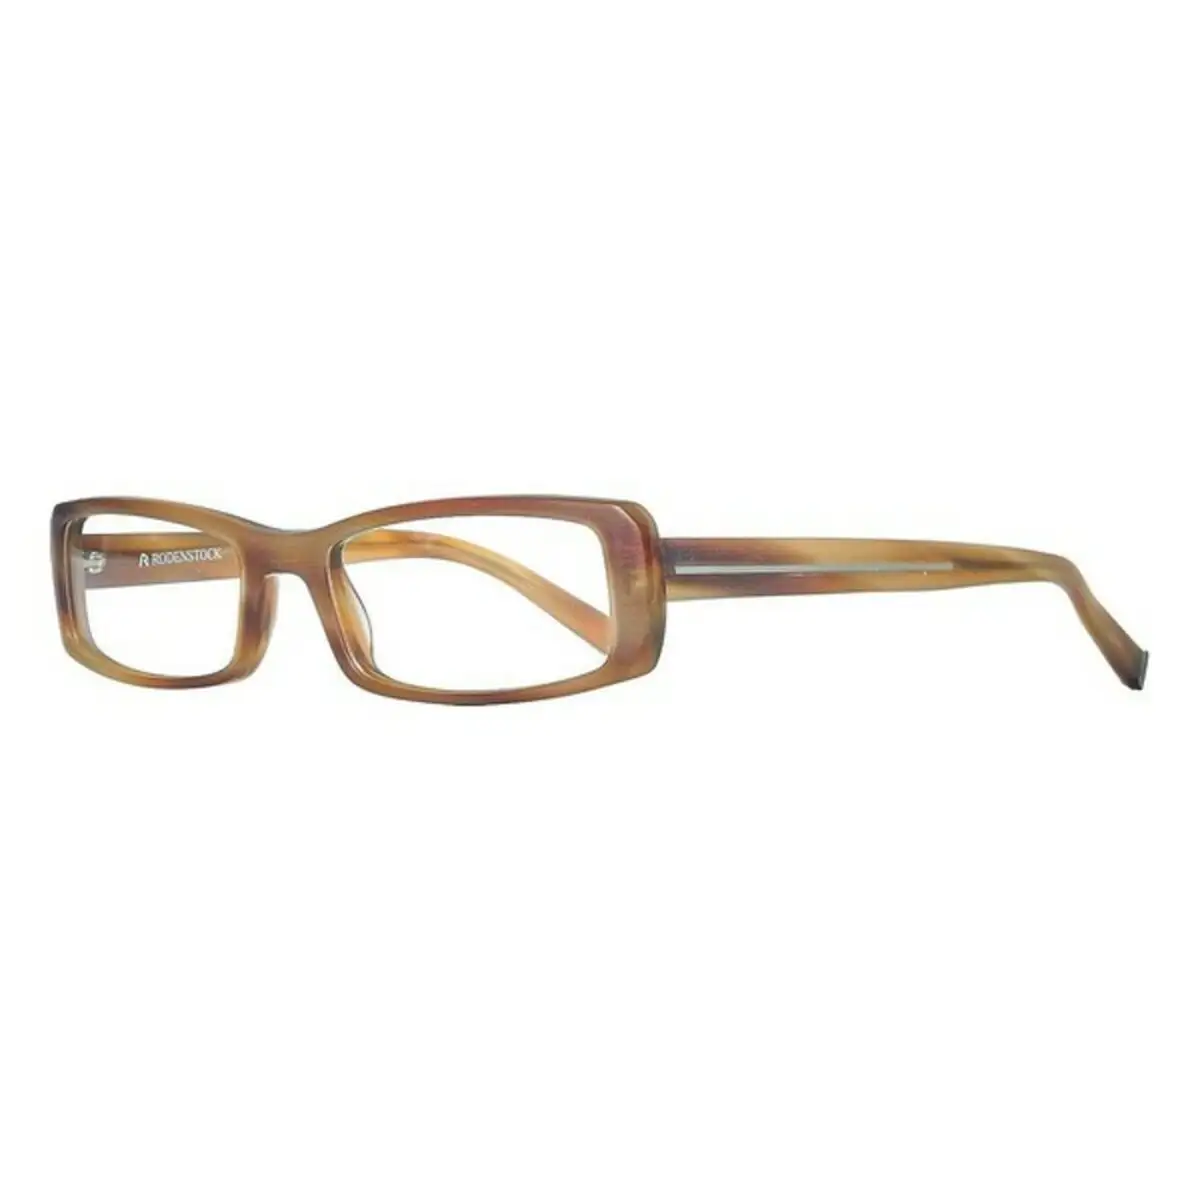 Monture de lunettes femme rodenstock r5190 b marron o 52 mm _9872. DIAYTAR SENEGAL - Votre Destination Shopping de Choix. Explorez notre boutique en ligne et découvrez des trésors qui reflètent votre style et votre passion pour l'authenticité.